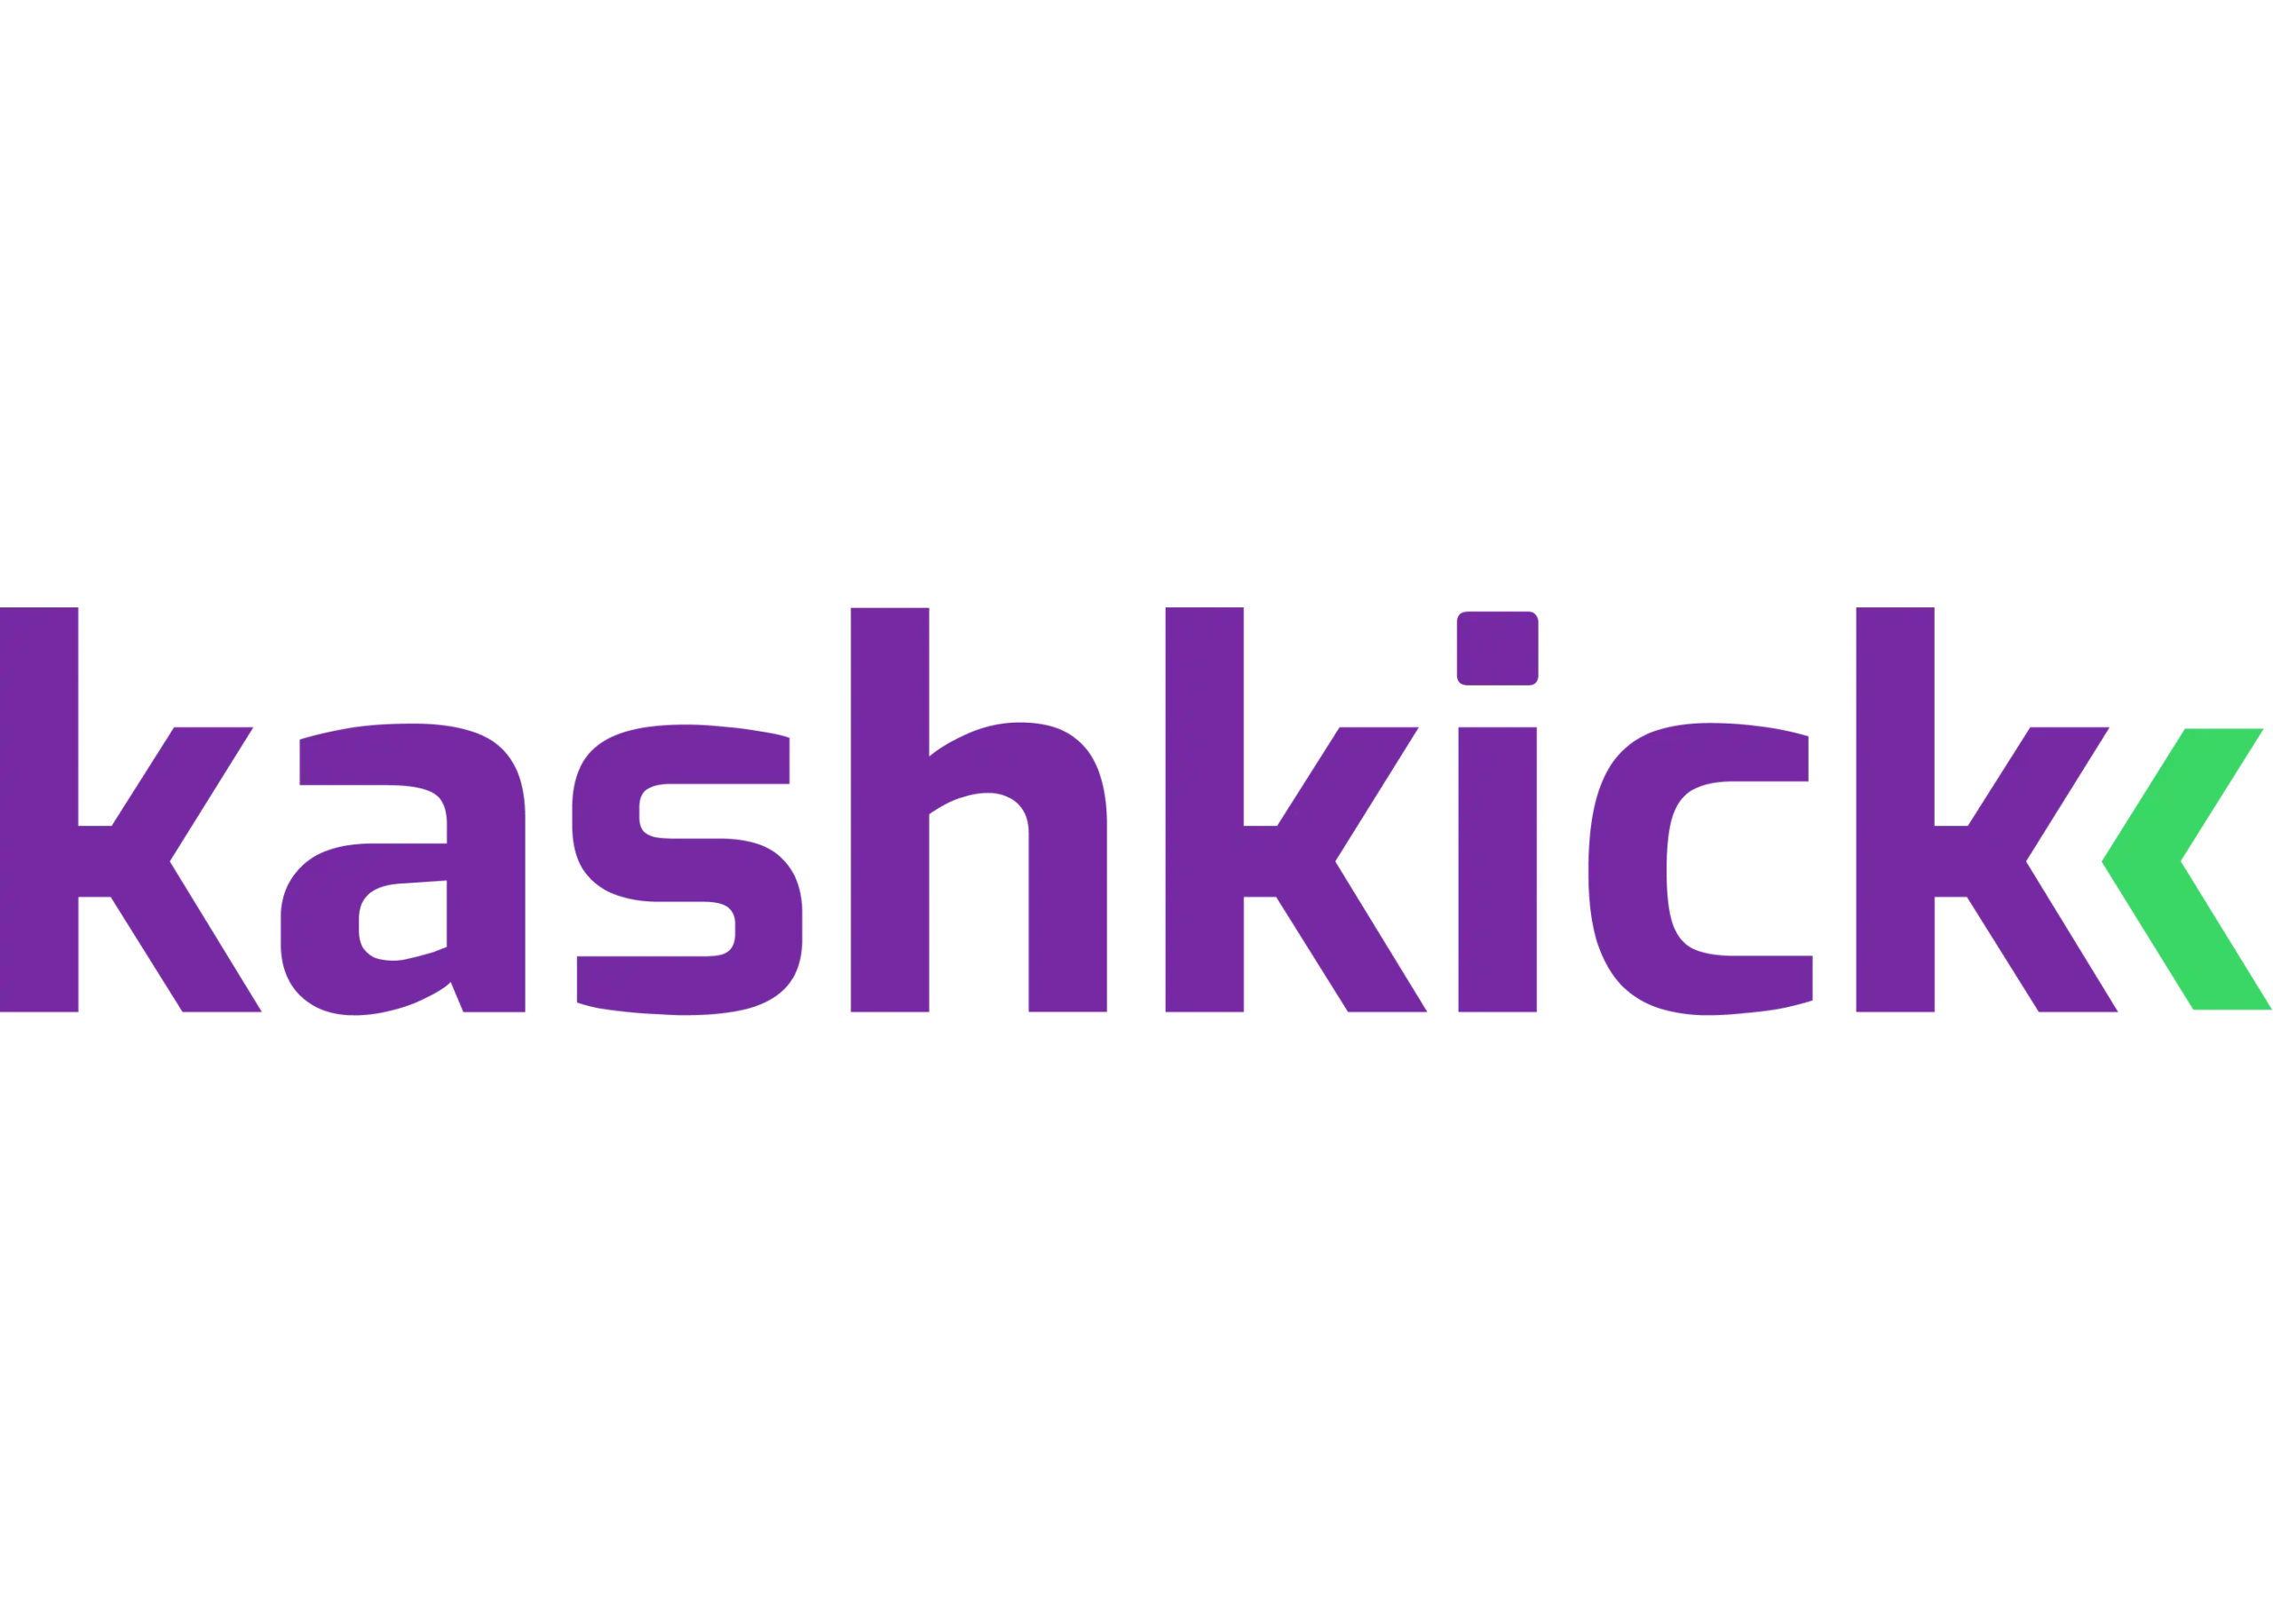 KashKick